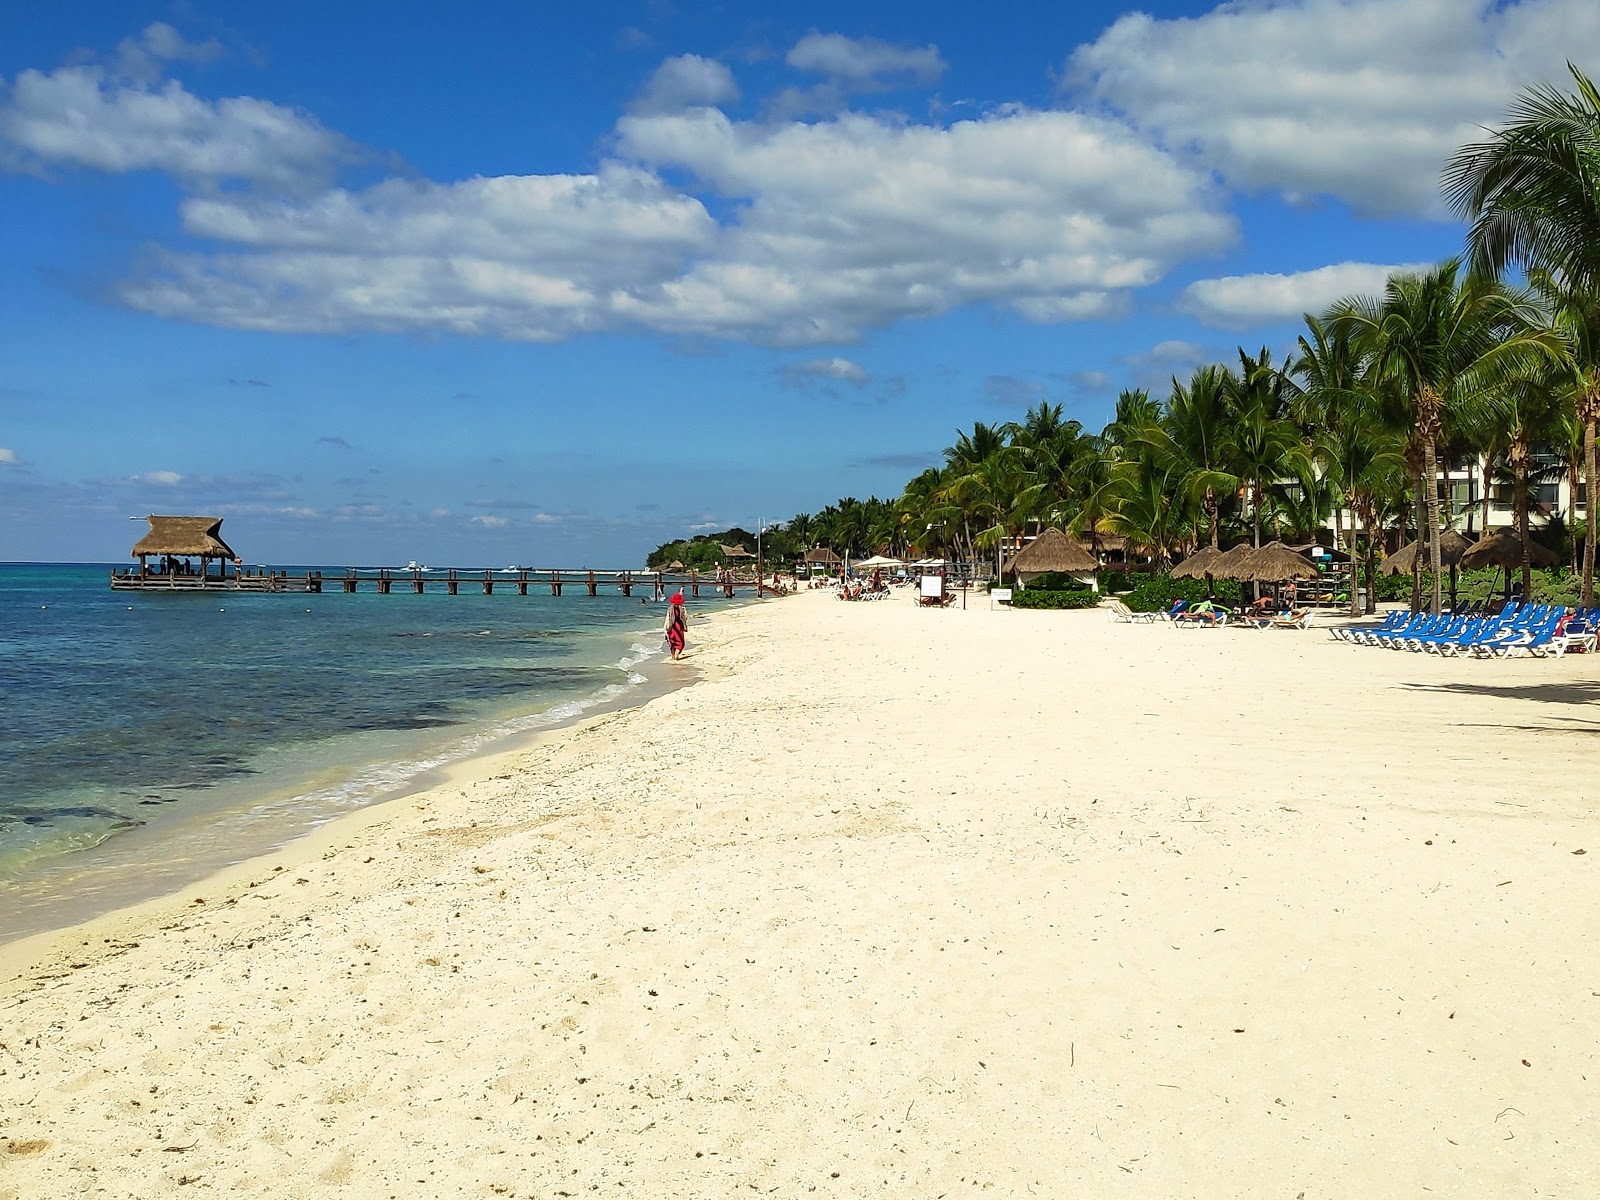 Fotografie cu Playa Mia cu o suprafață de nisip fin strălucitor